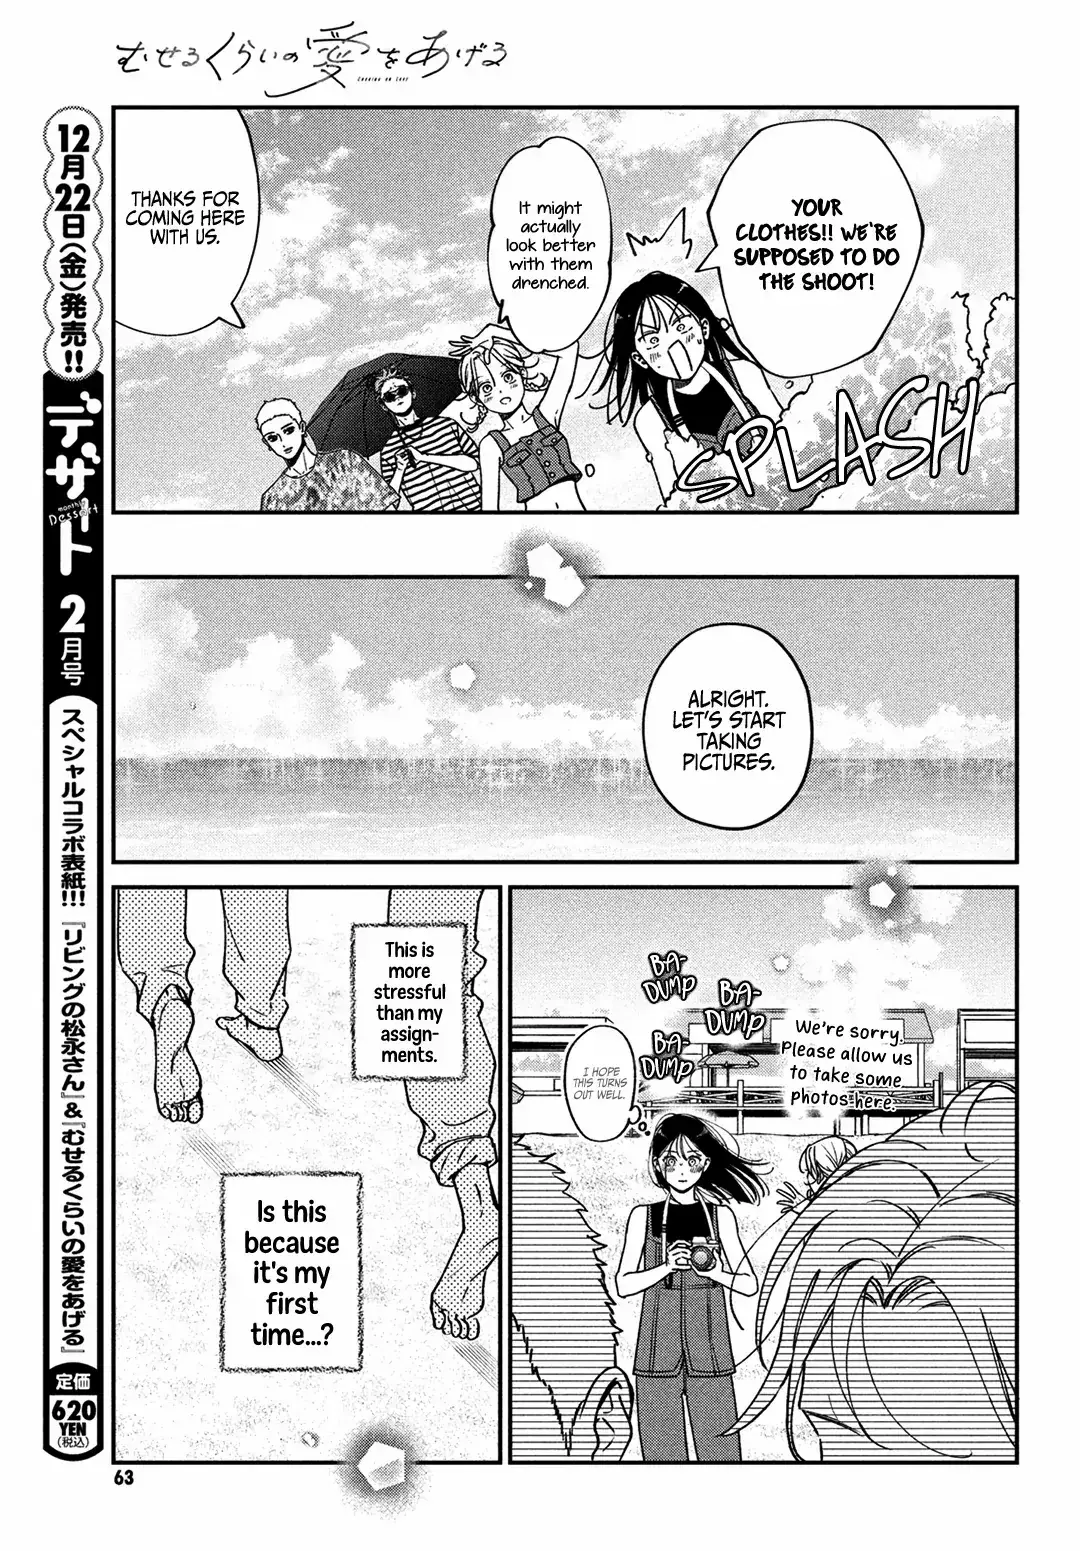 Museru Kurai No Ai Wo Ageru - 10 page 12-0e9a8e19